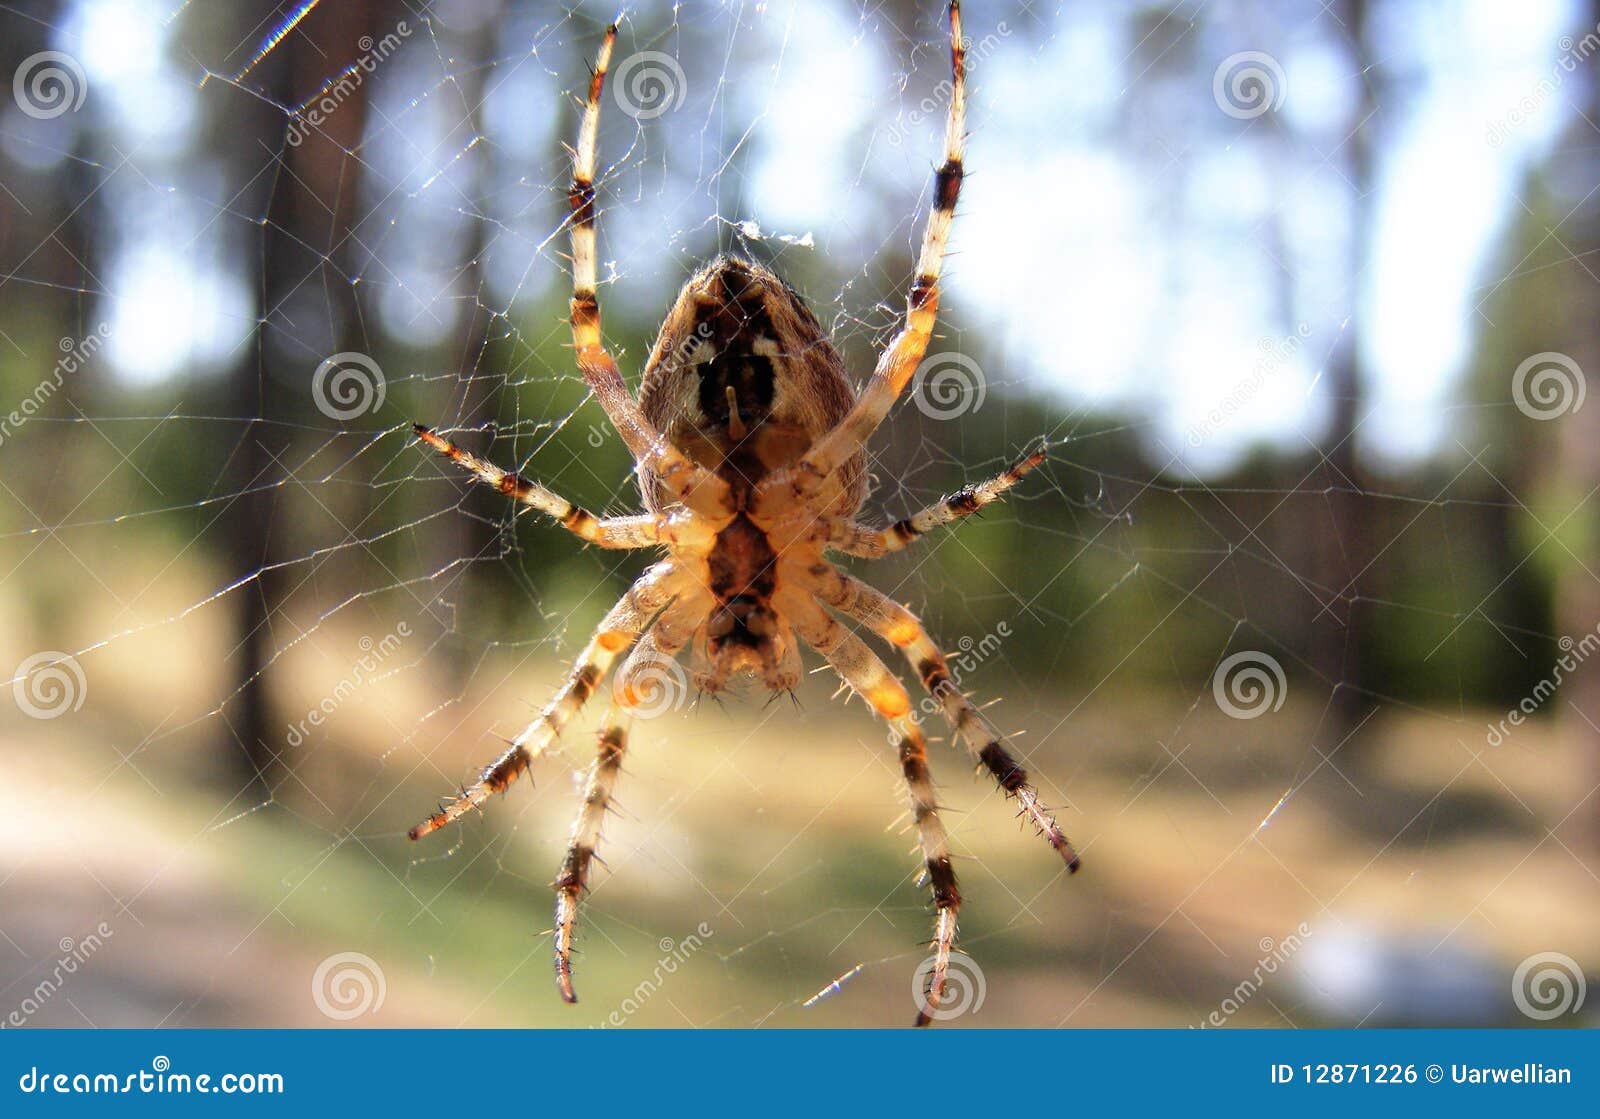 cross spider in the cobweb